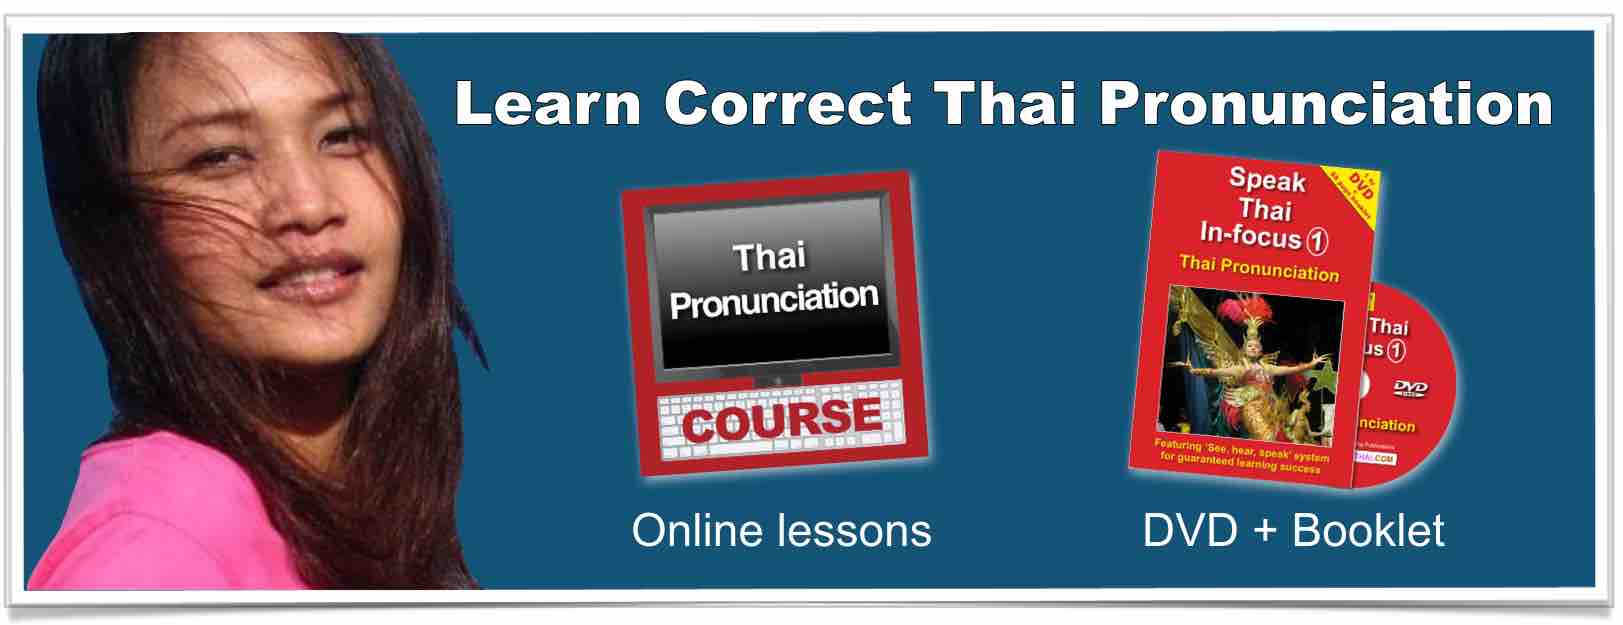 Learn Correct Thai Pronunciation